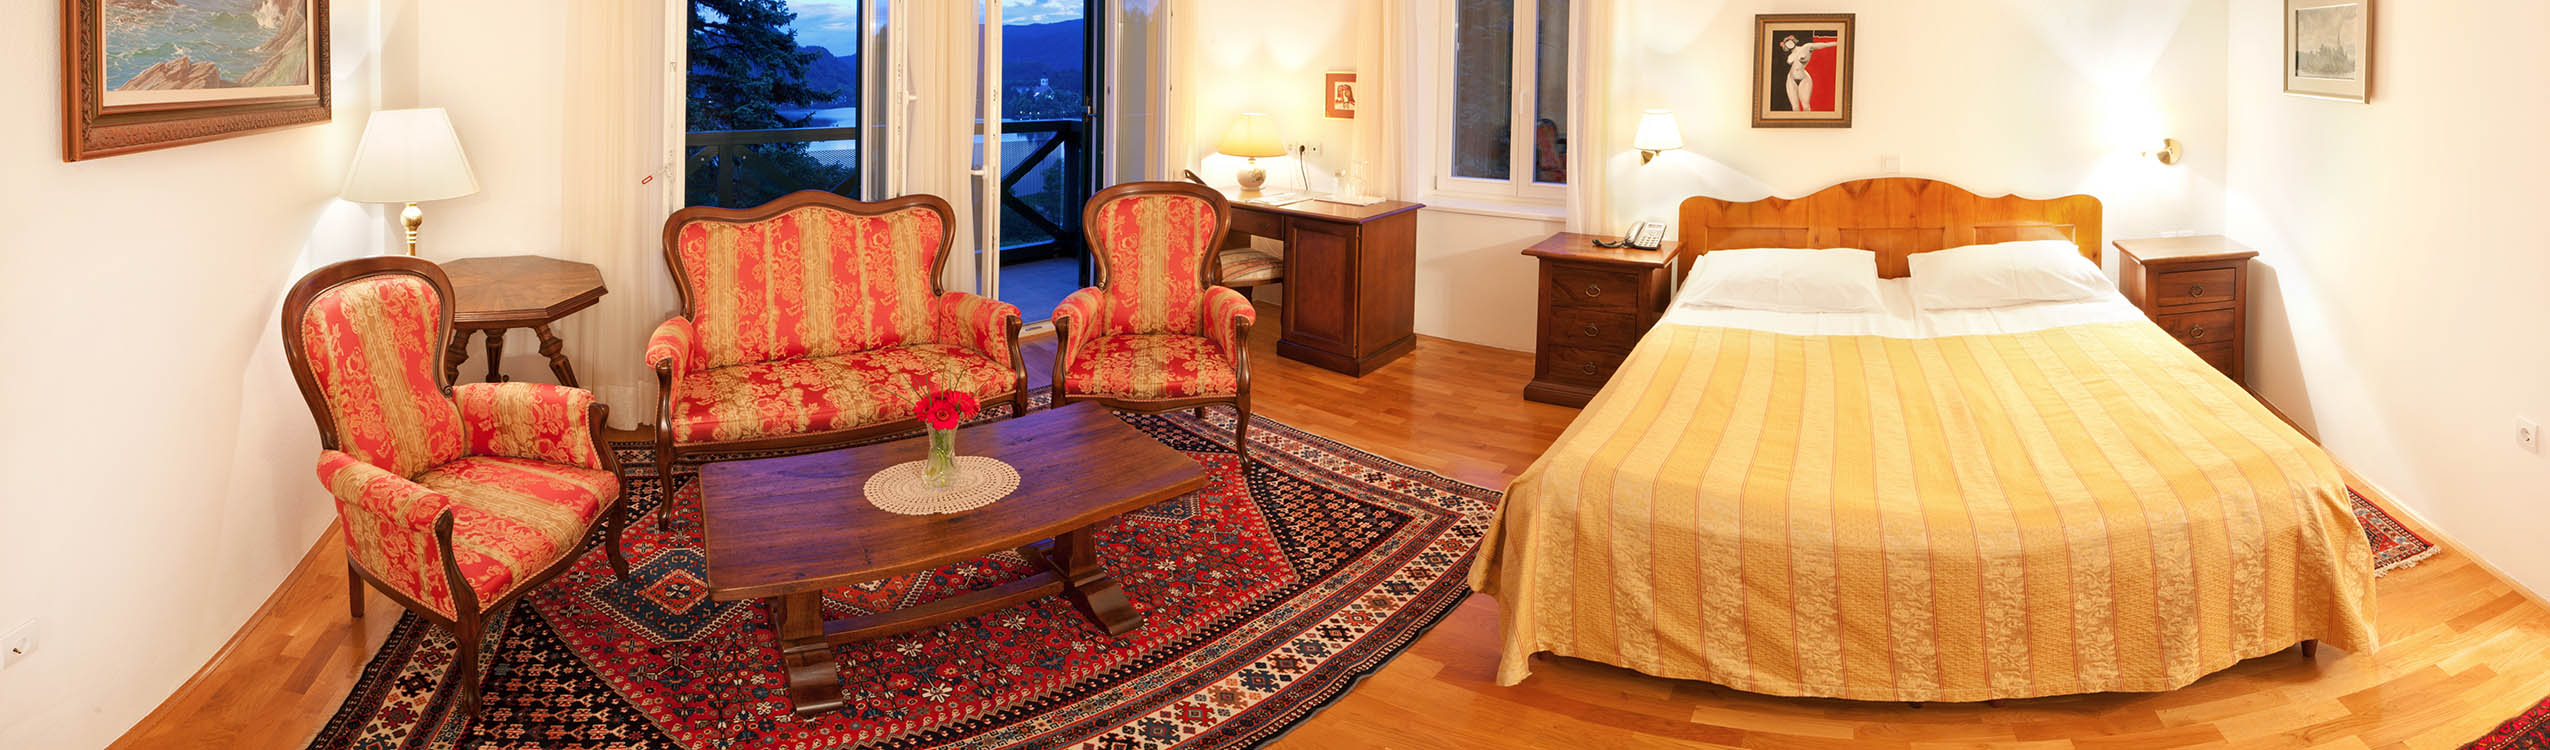 Hotel Triglav Bled - nočitev z zajtrkom in gourmet večerjo ob Blejskem jezeru